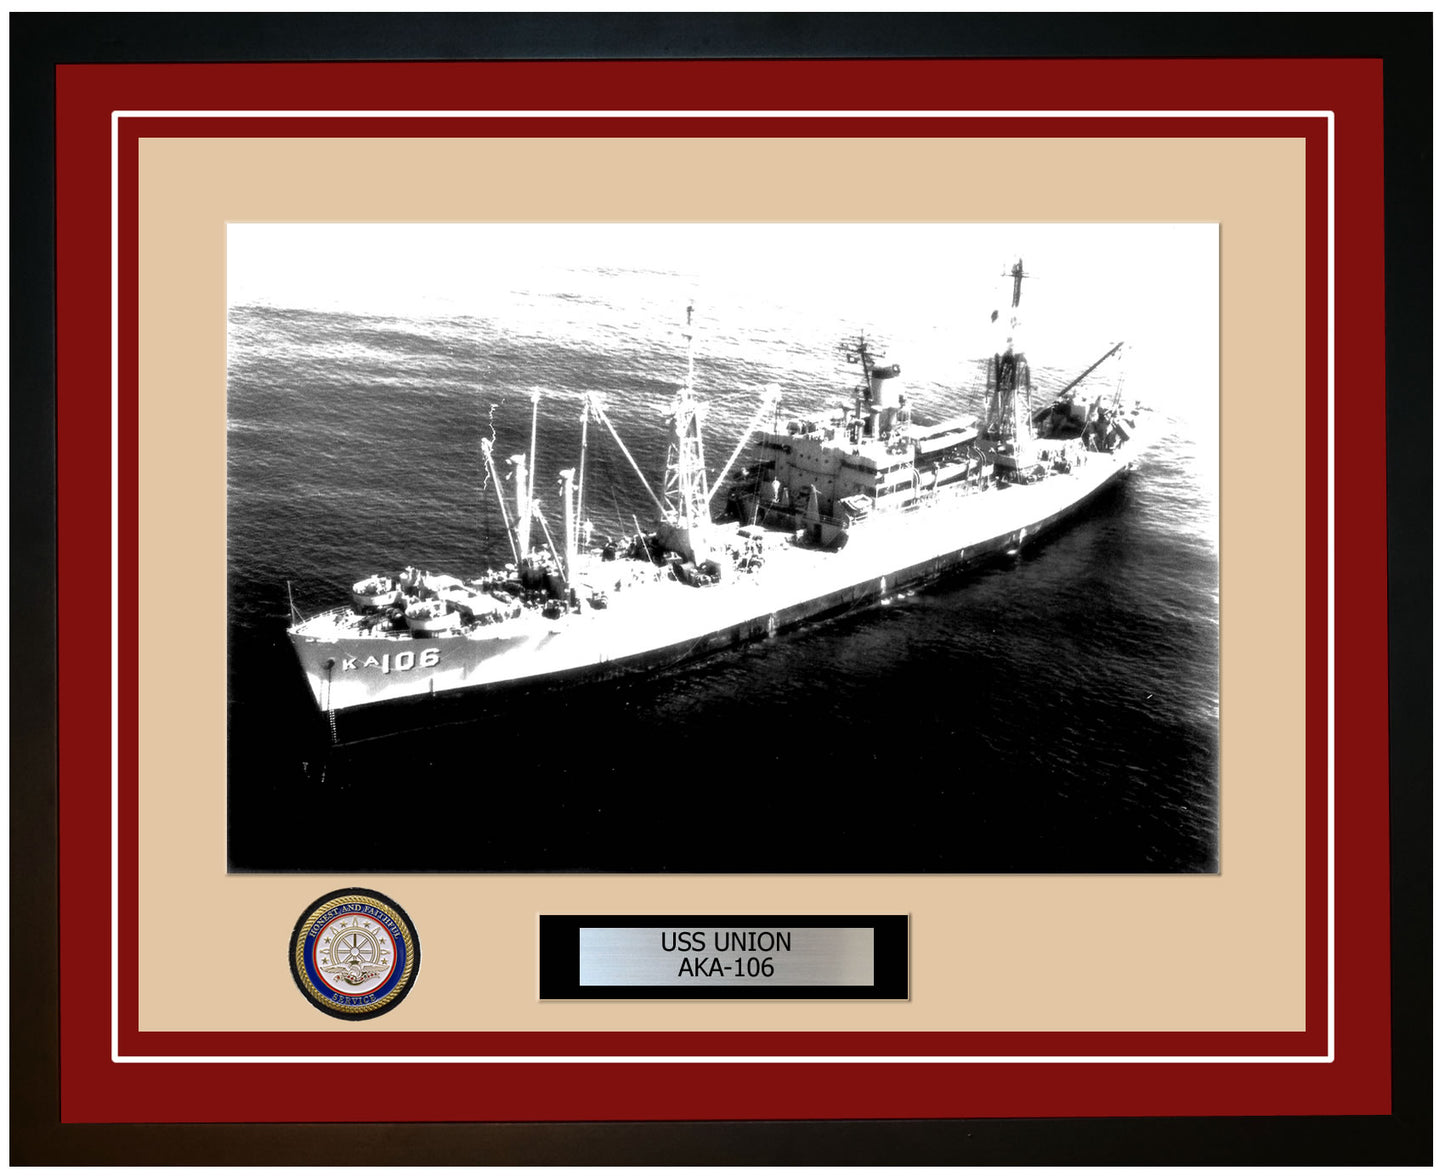 USS Union AKA-106 Framed Navy Ship Photo Burgundy